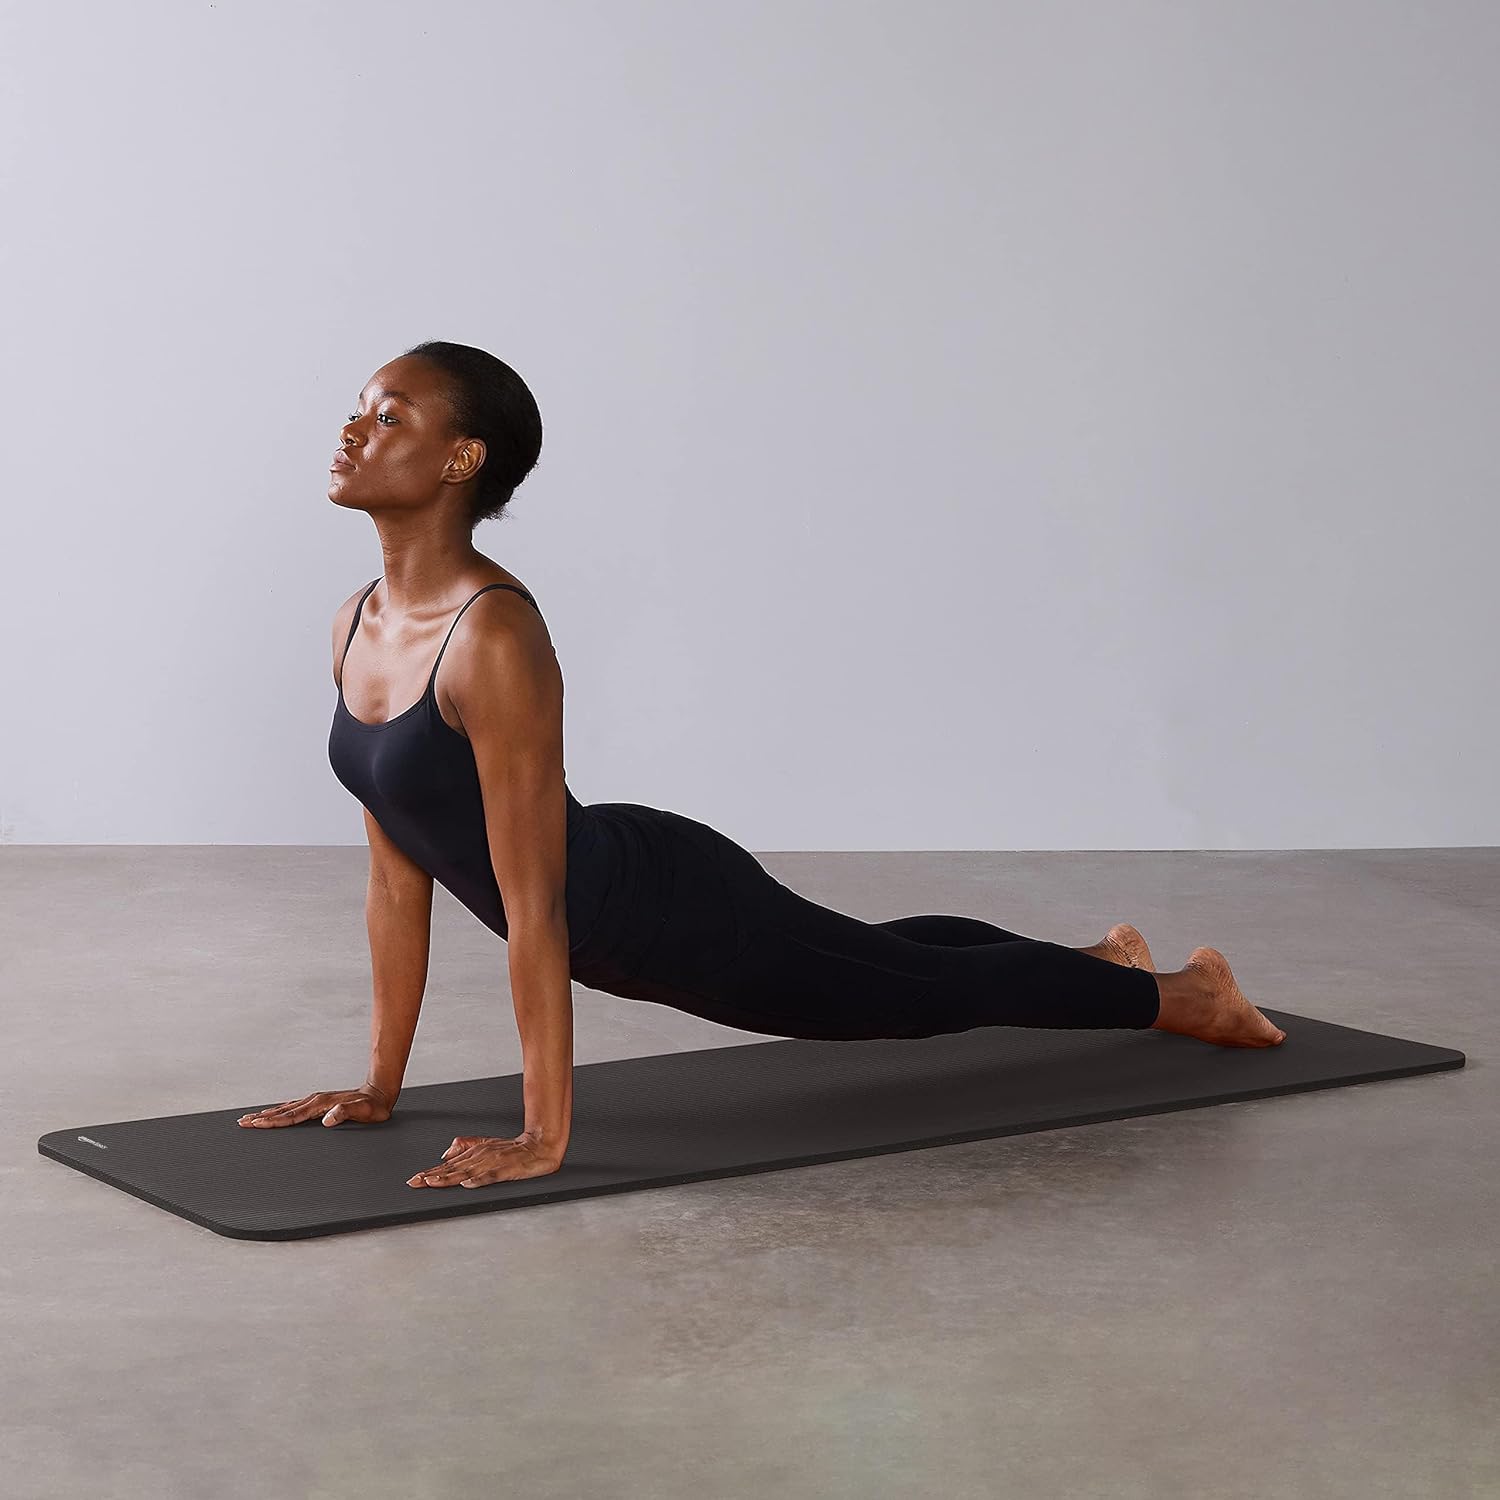 Amazon Basics Yoga Mat Enhances Fitness Routine